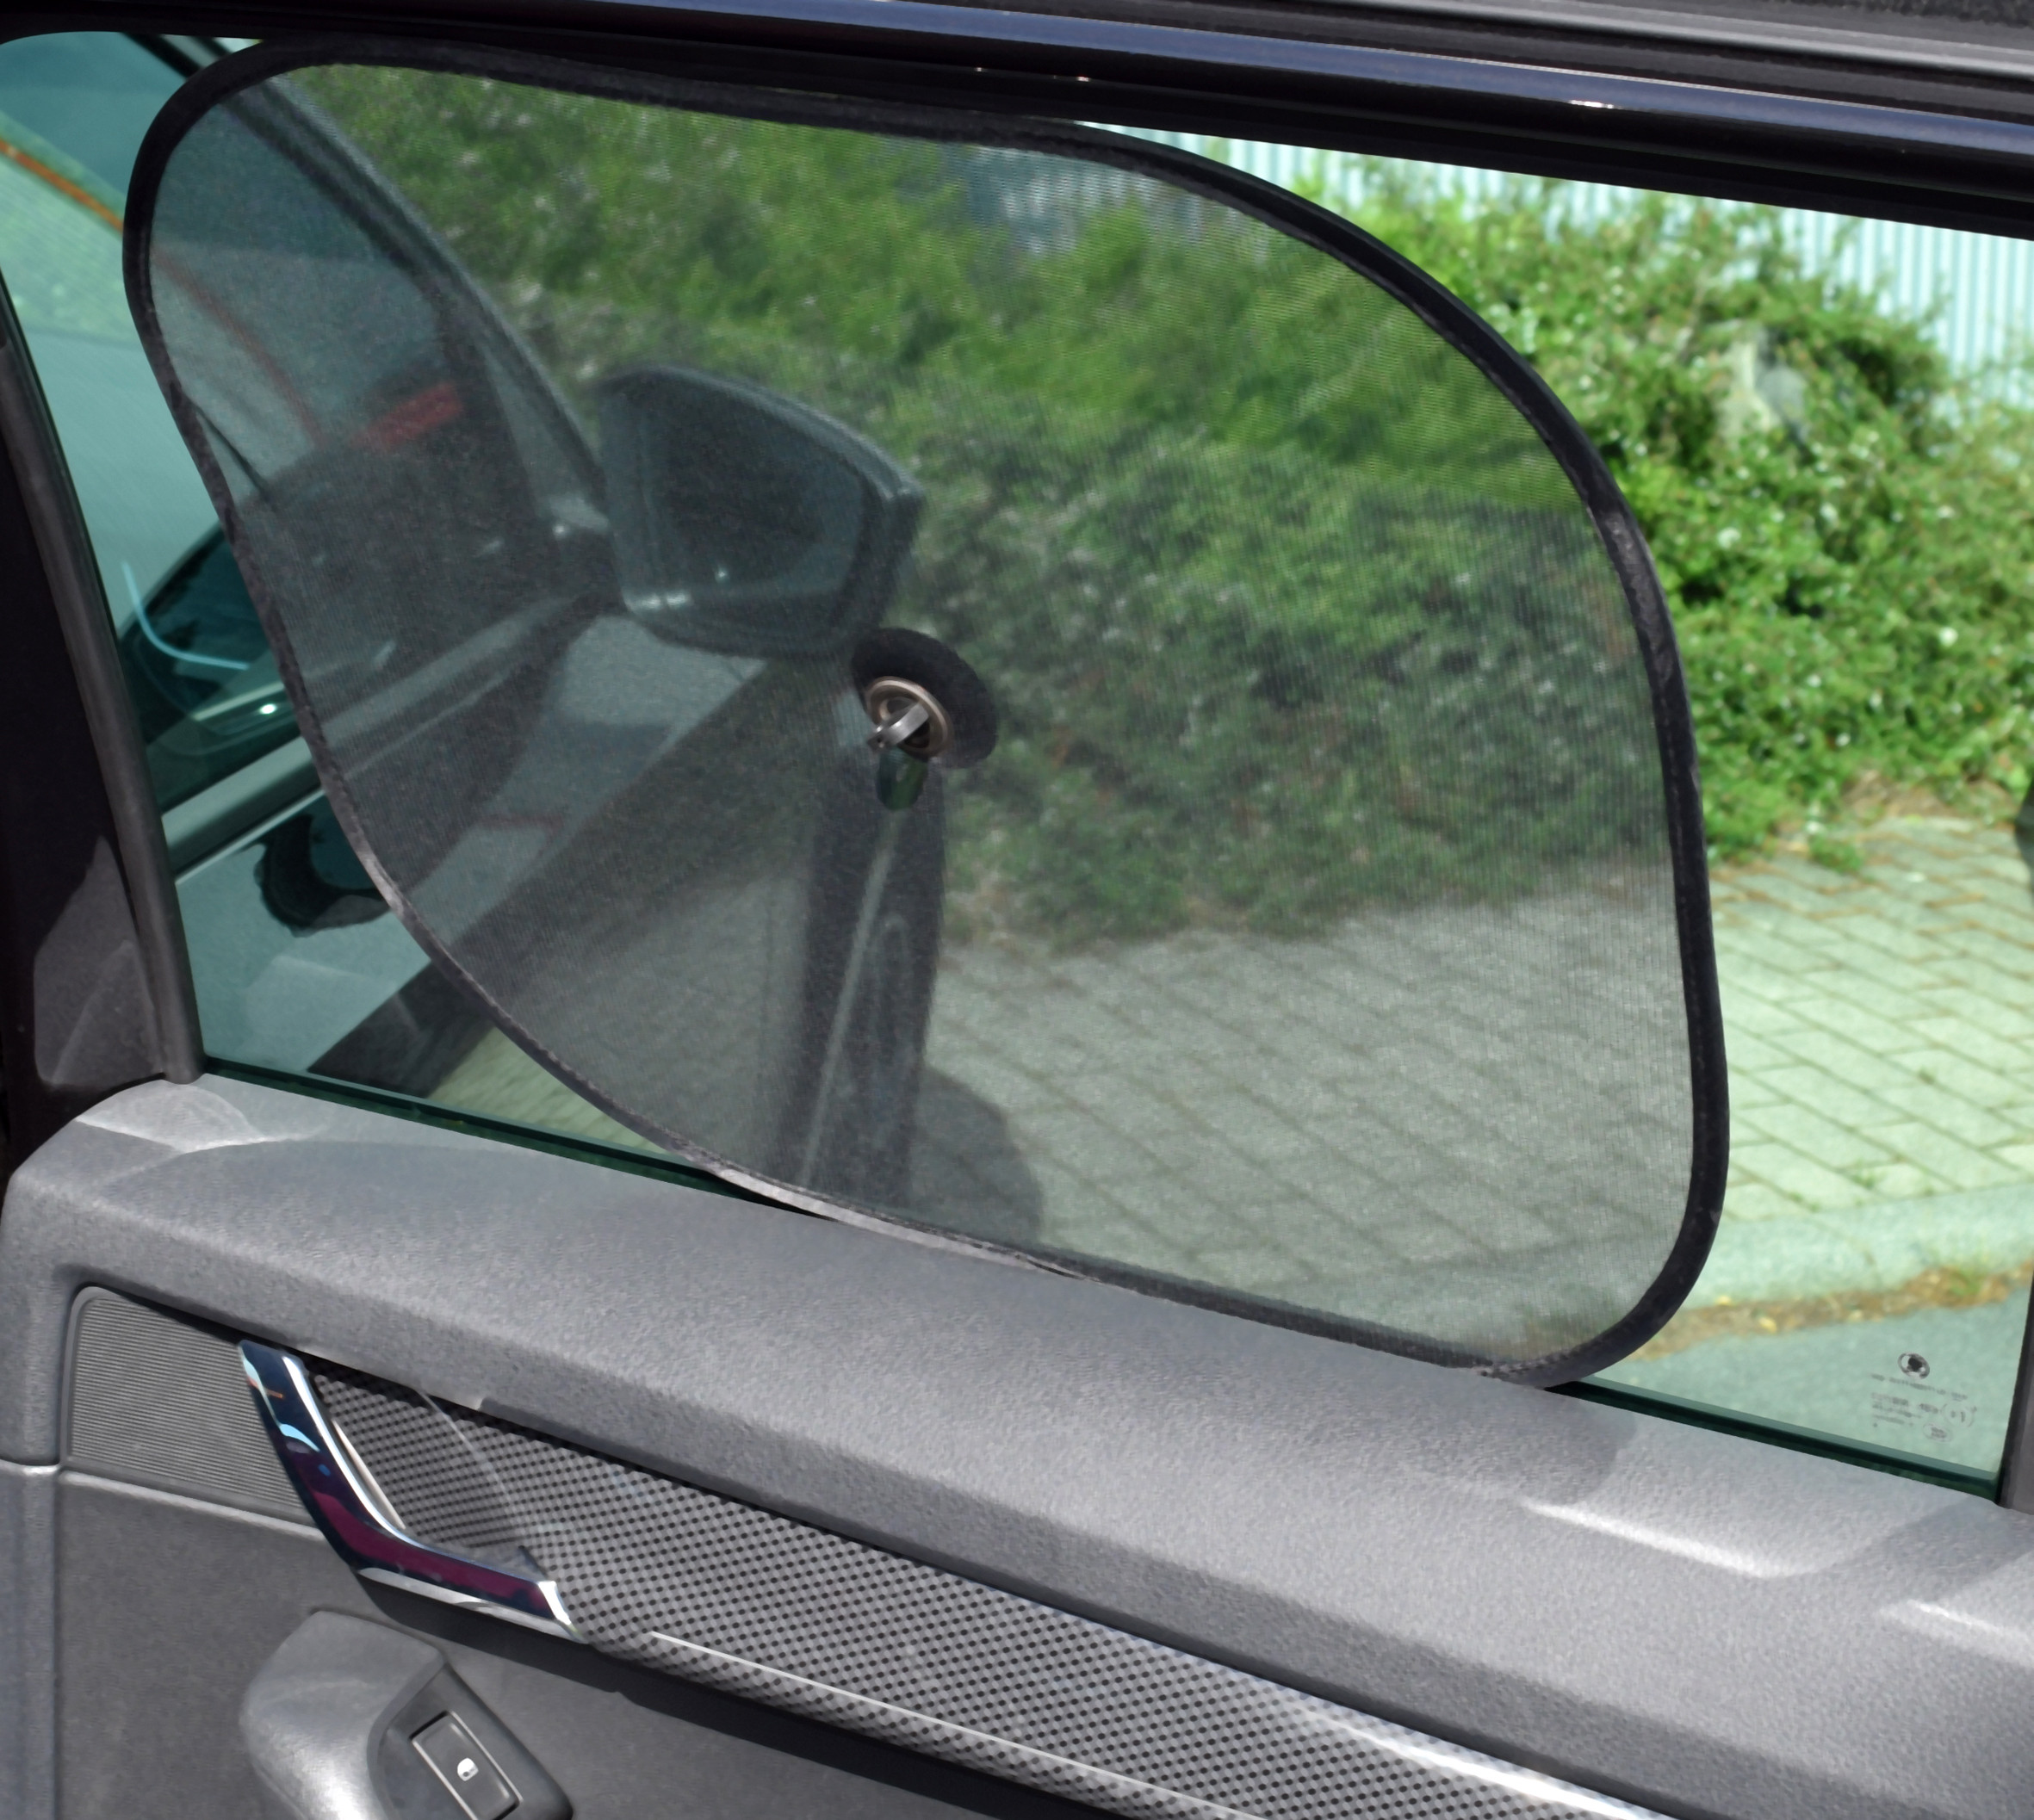  Sonnenschutz-Sichtschutz-Blendschutz-Insektenschutz-sonniboy  für Autoscheiben!